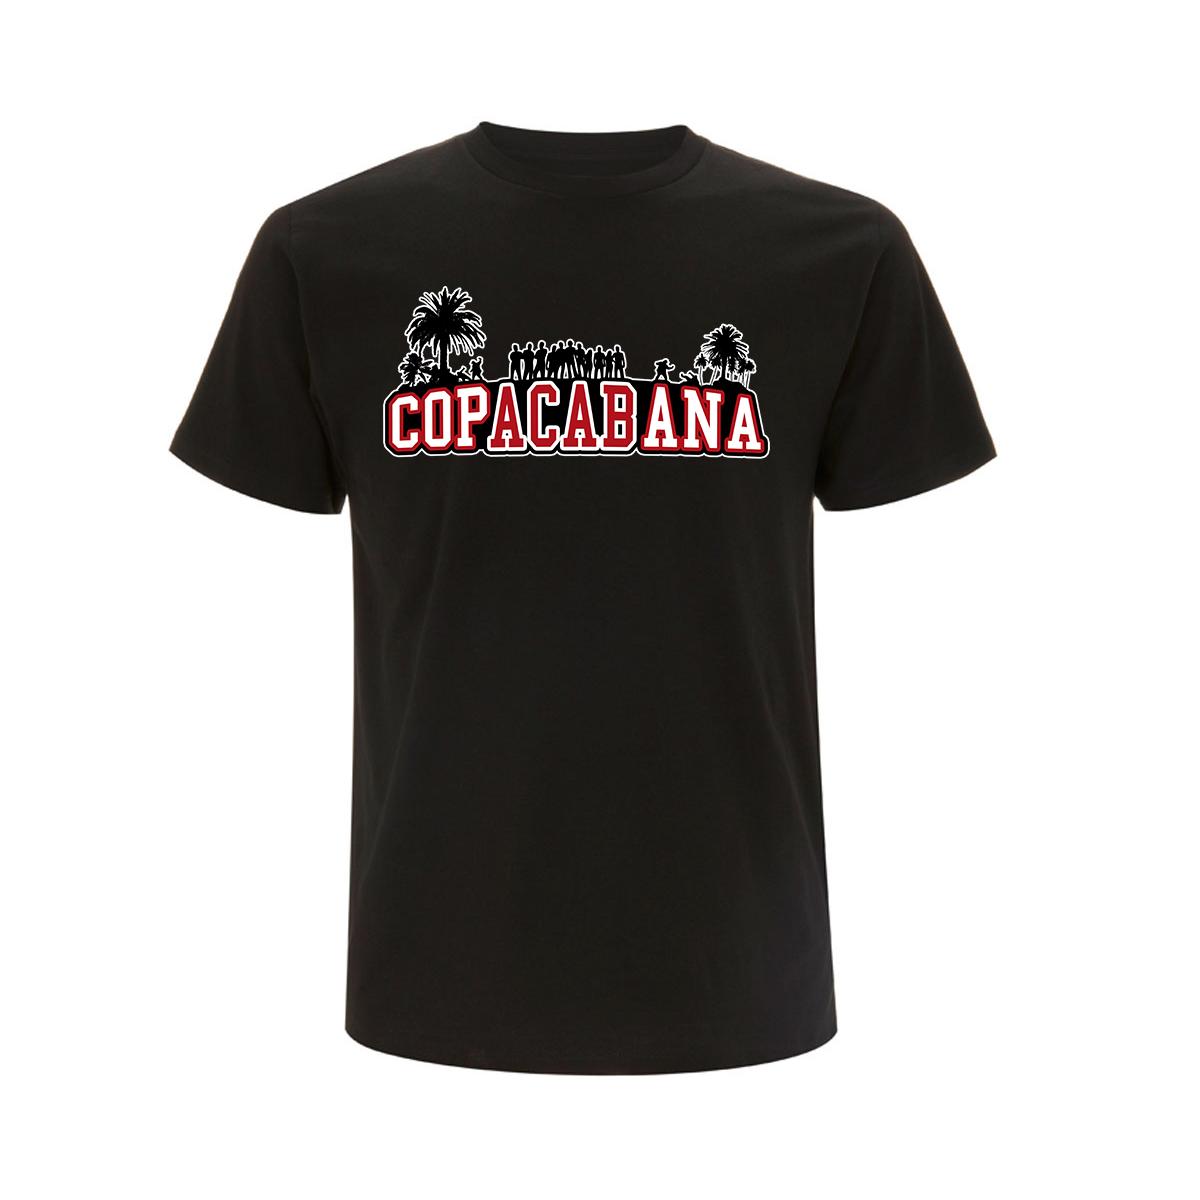 Copacabana - Druck rot-weiß - Männer T-Shirt - schwarz